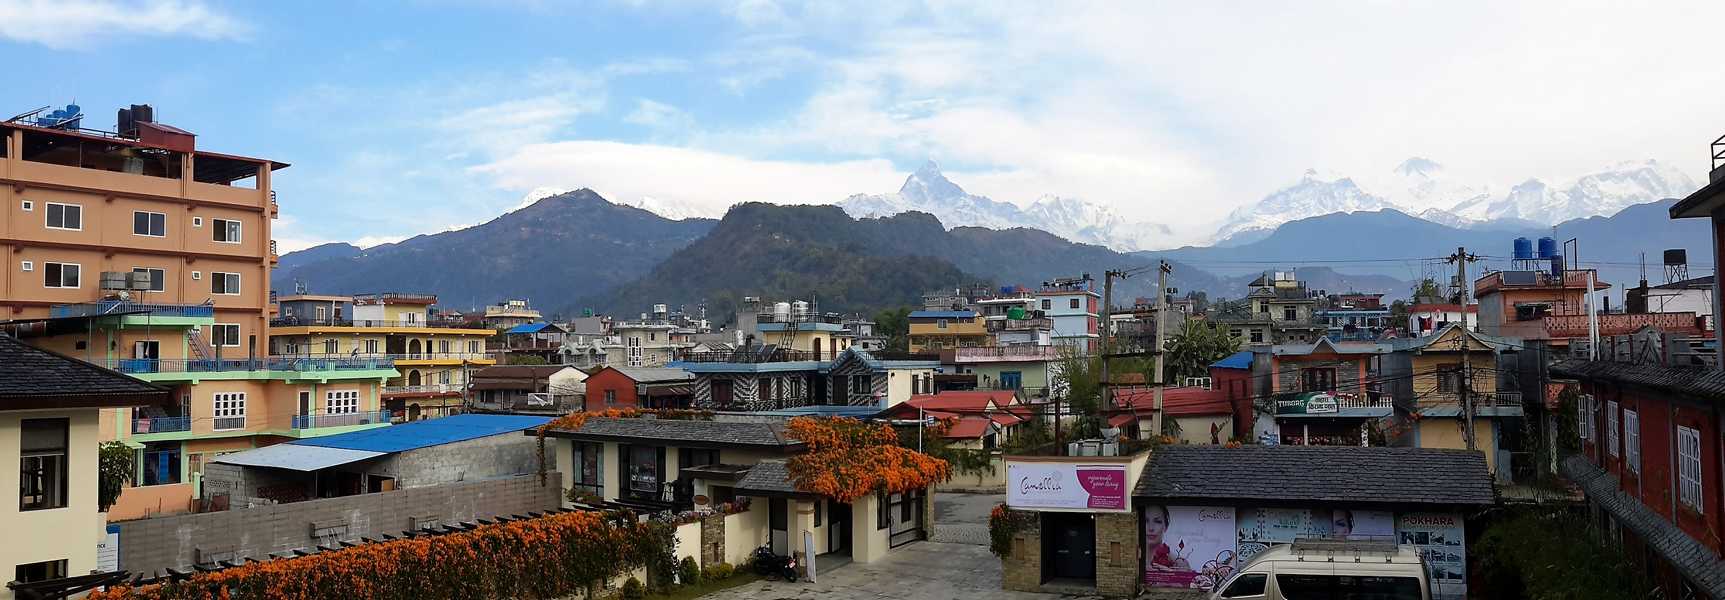 Blick vom Hotel auf die Himalayaberge